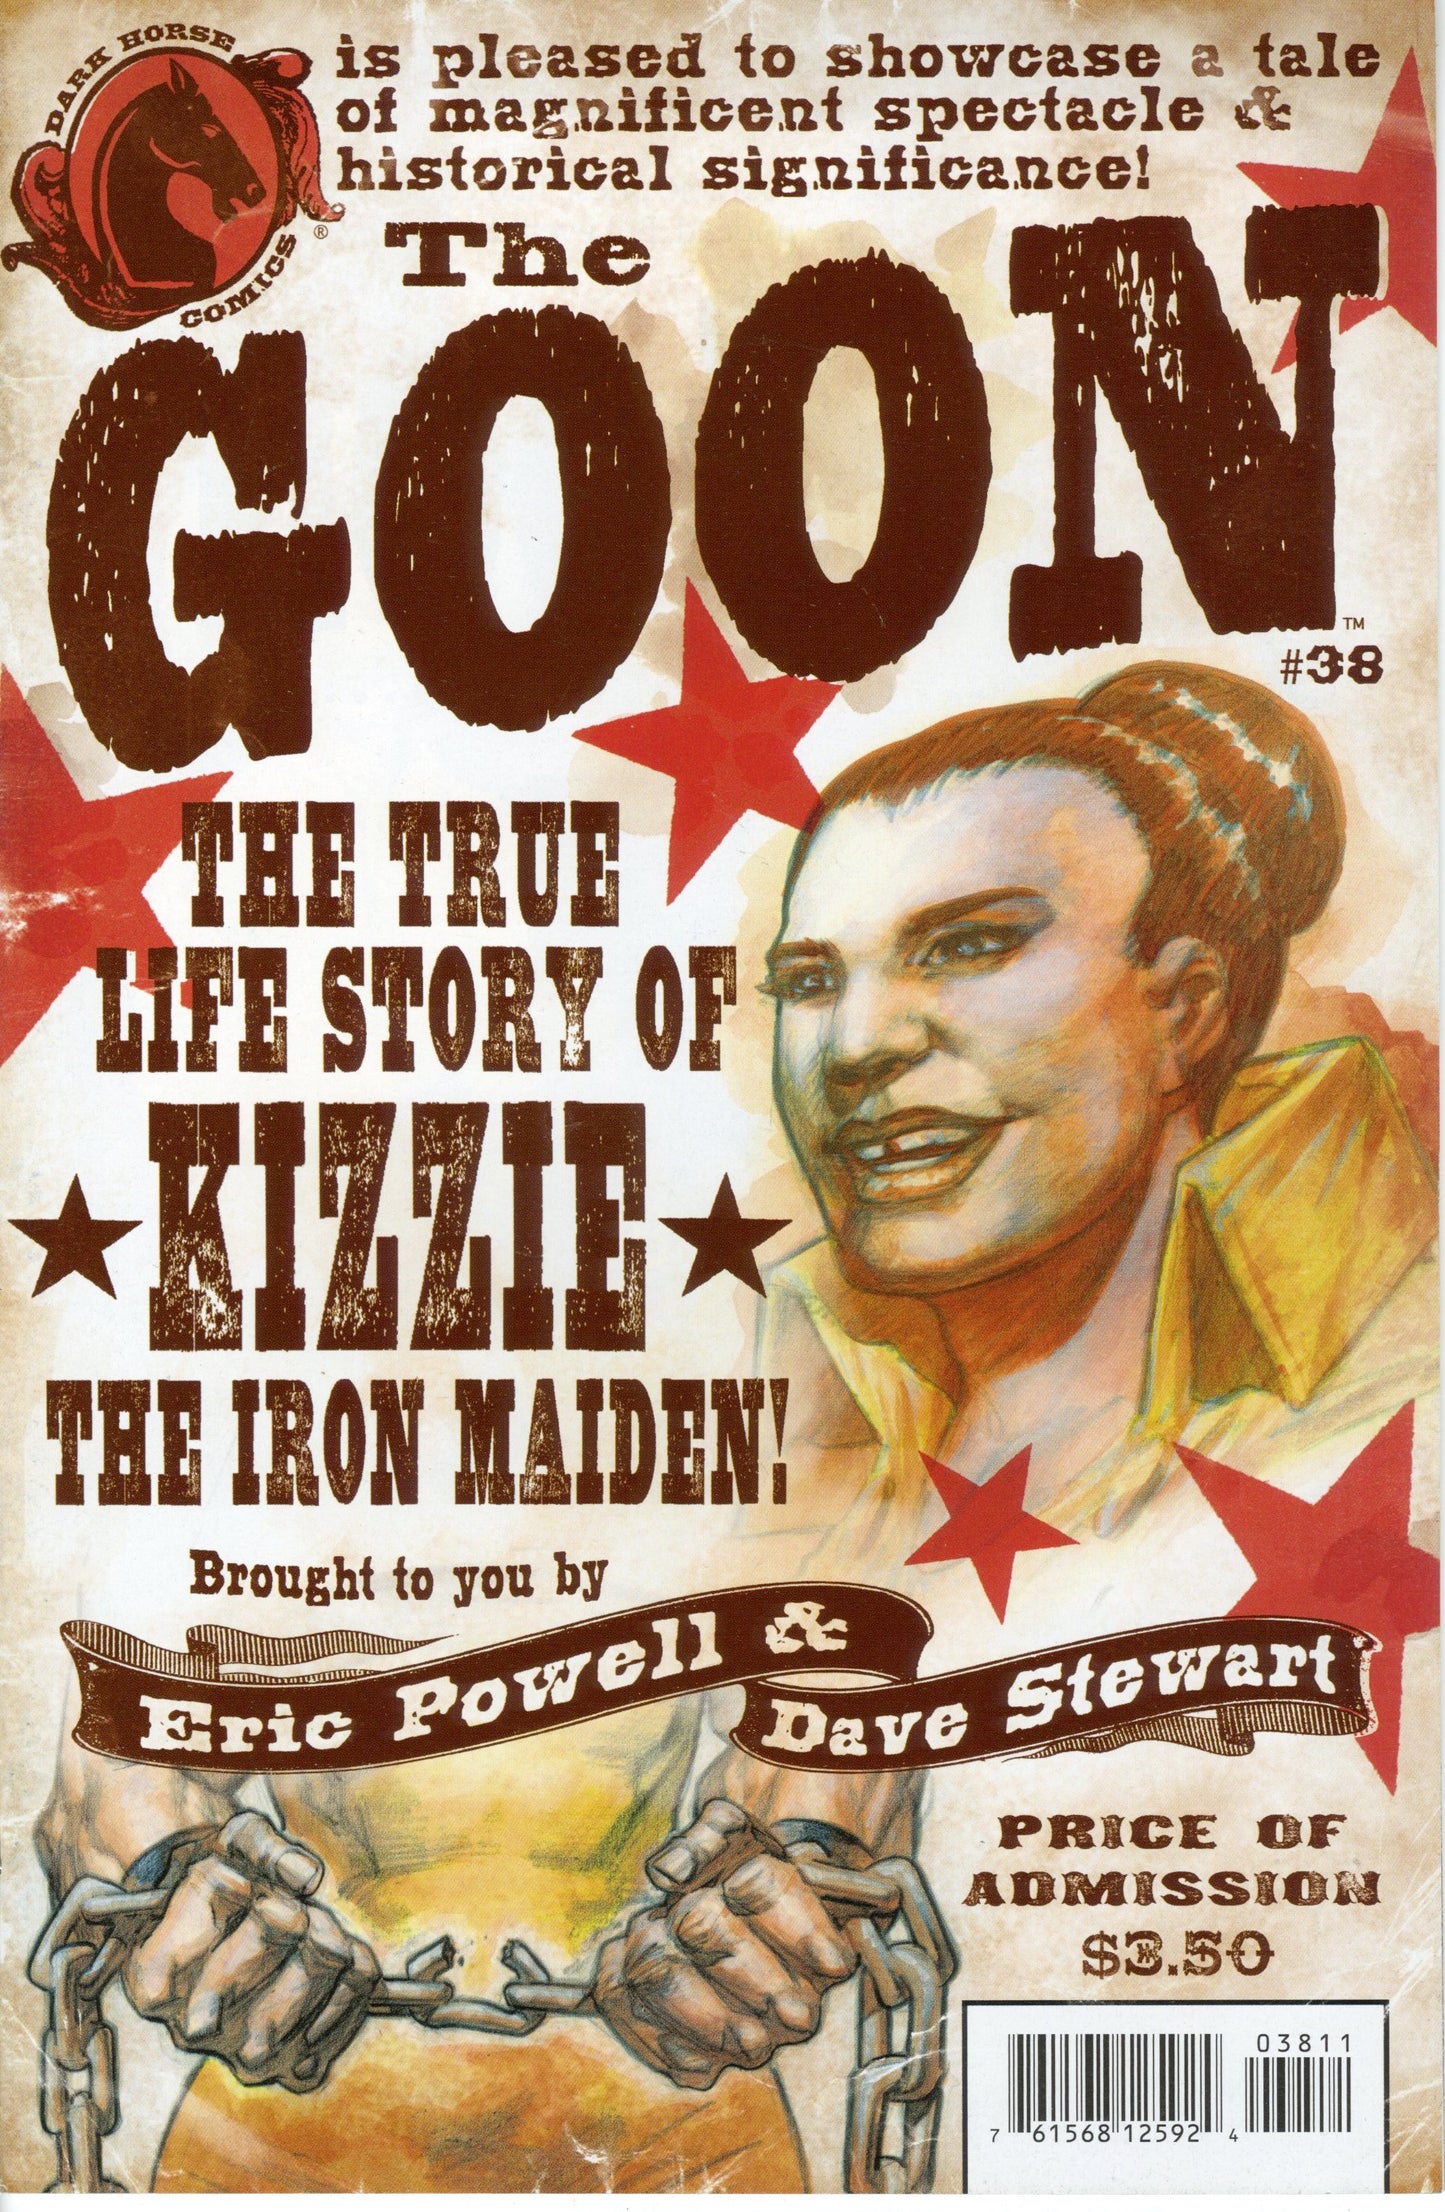 The Goon #38 "Kizzie!The Iron Maiden!"